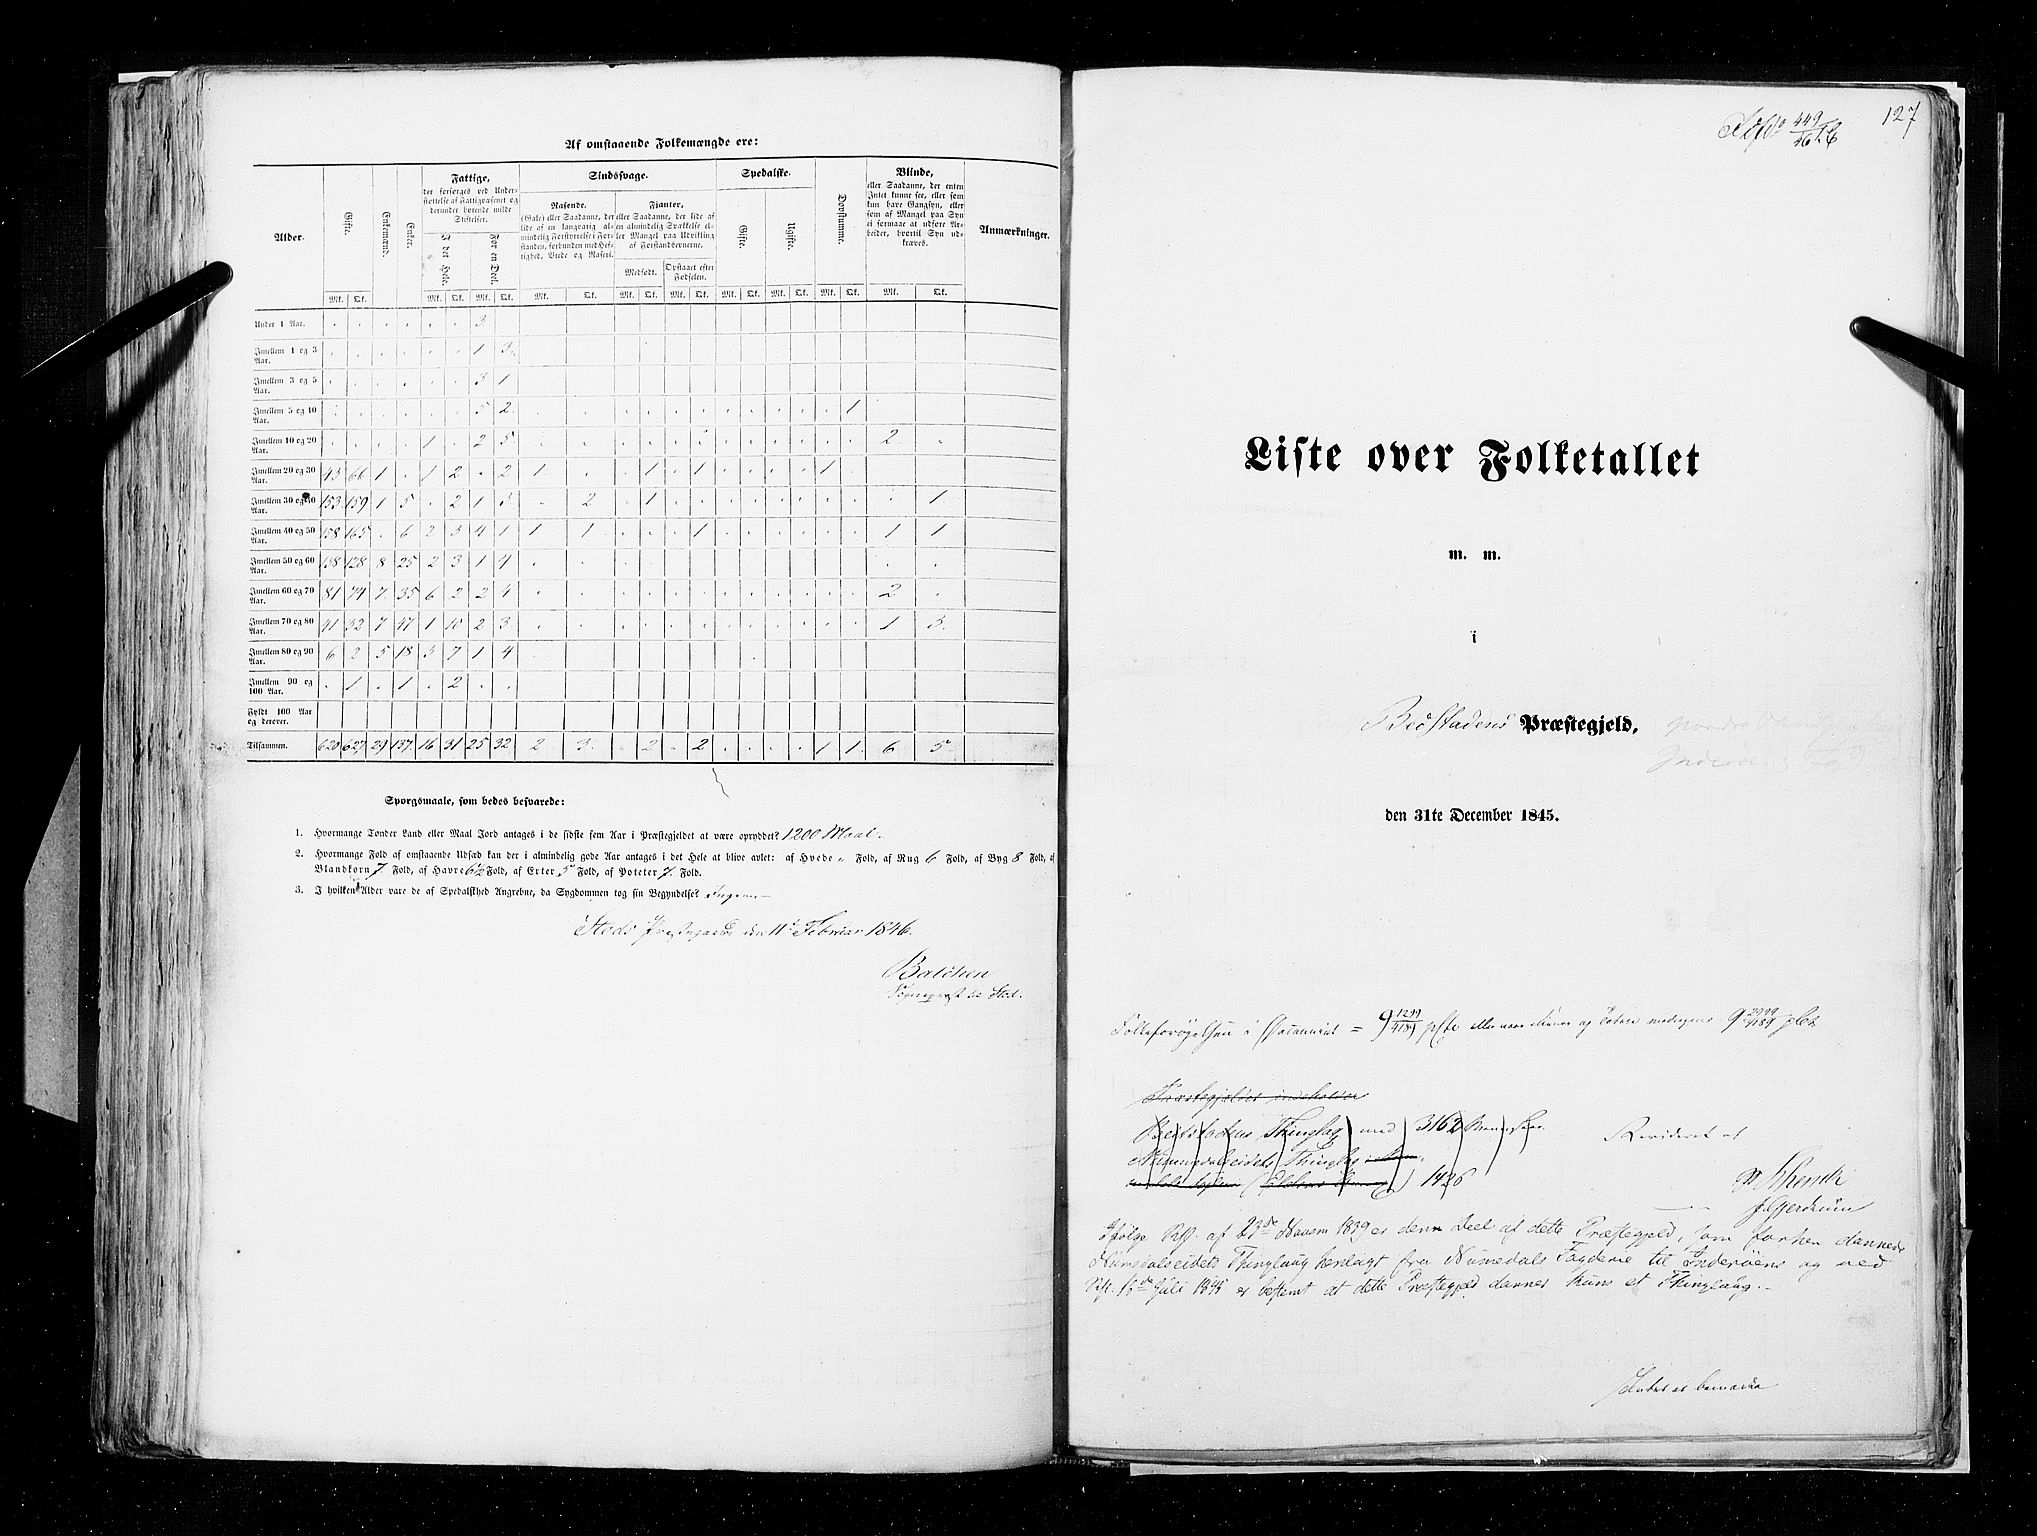 RA, Folketellingen 1845, bind 9A: Nordre Trondhjems amt, 1845, s. 127